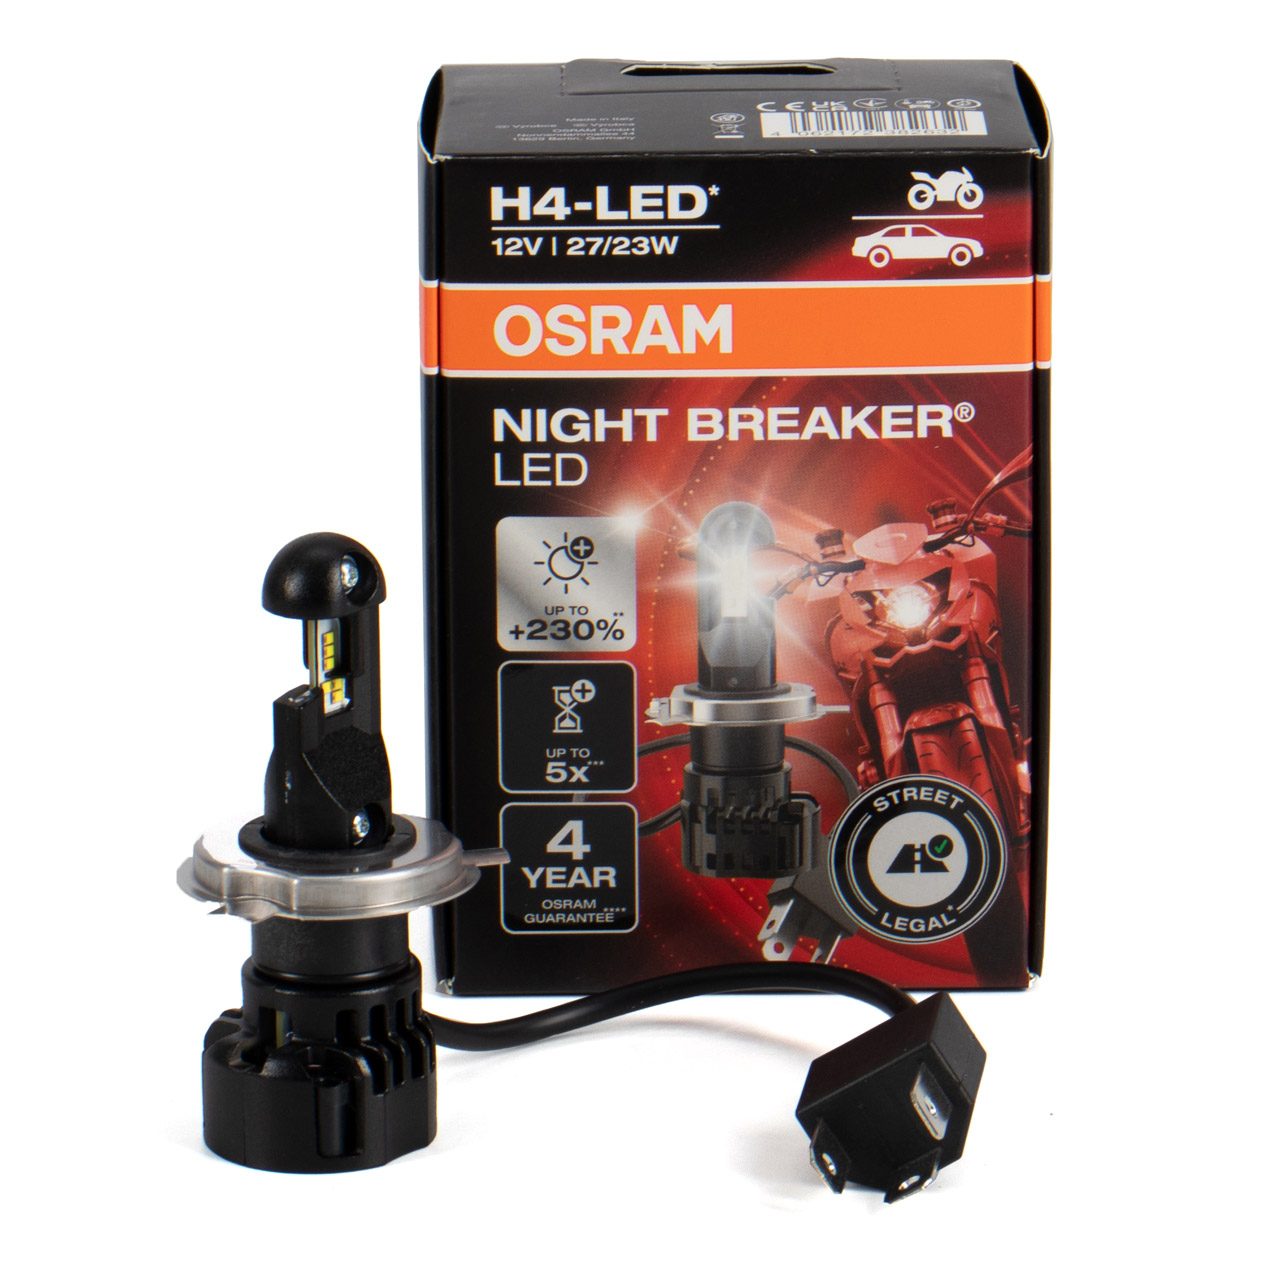 OSRAM H4 NIGHT BREAKER LED Motorrad Abblendlicht mit Straßenzulassung 12V  27/23W 6.000K 